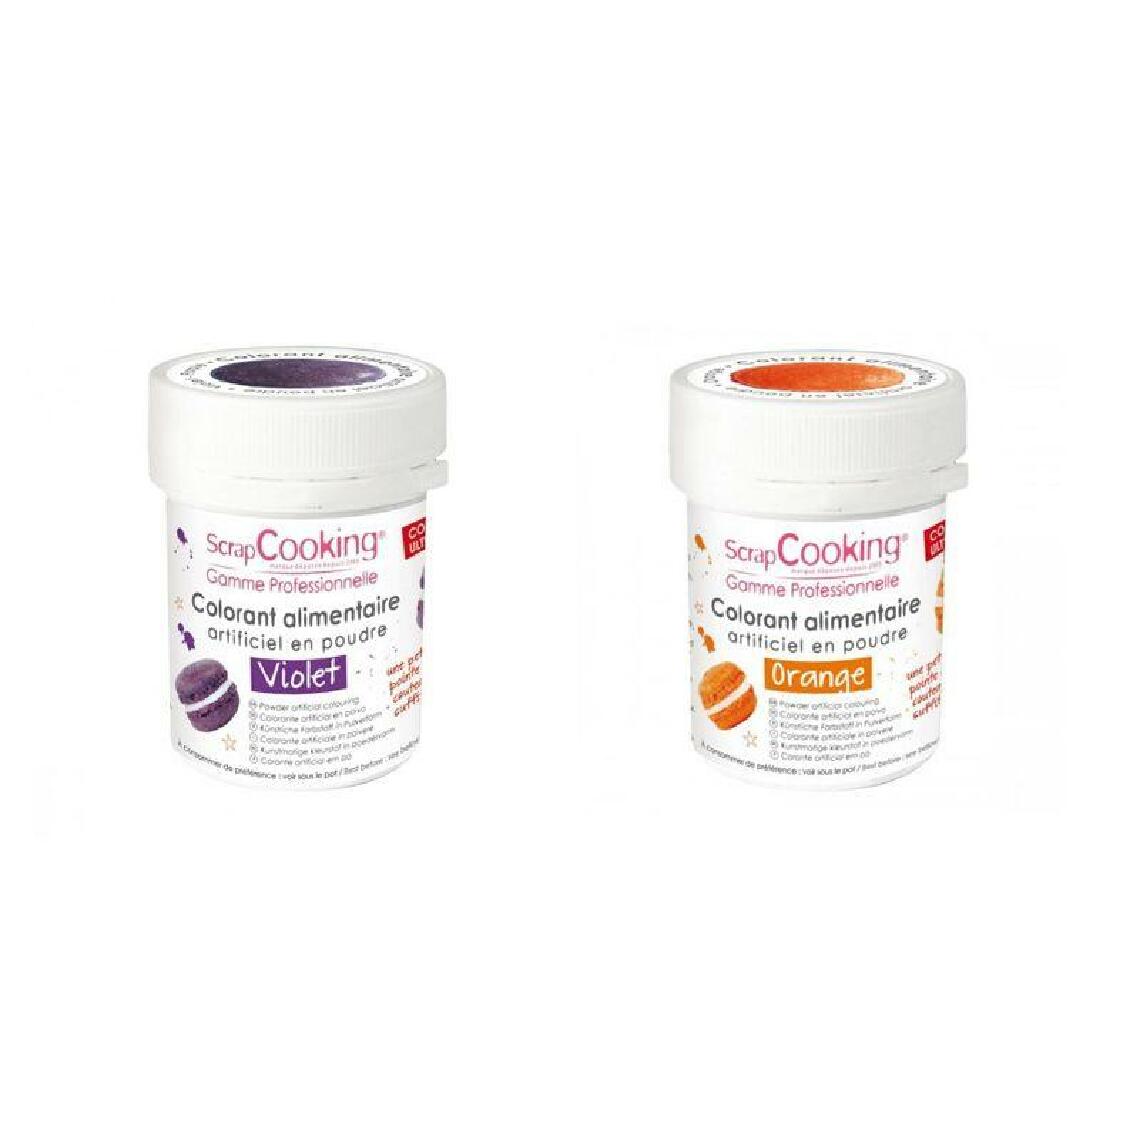 Scrapcooking - 2 colorants alimentaires en poudre - orange-violet - Kits créatifs